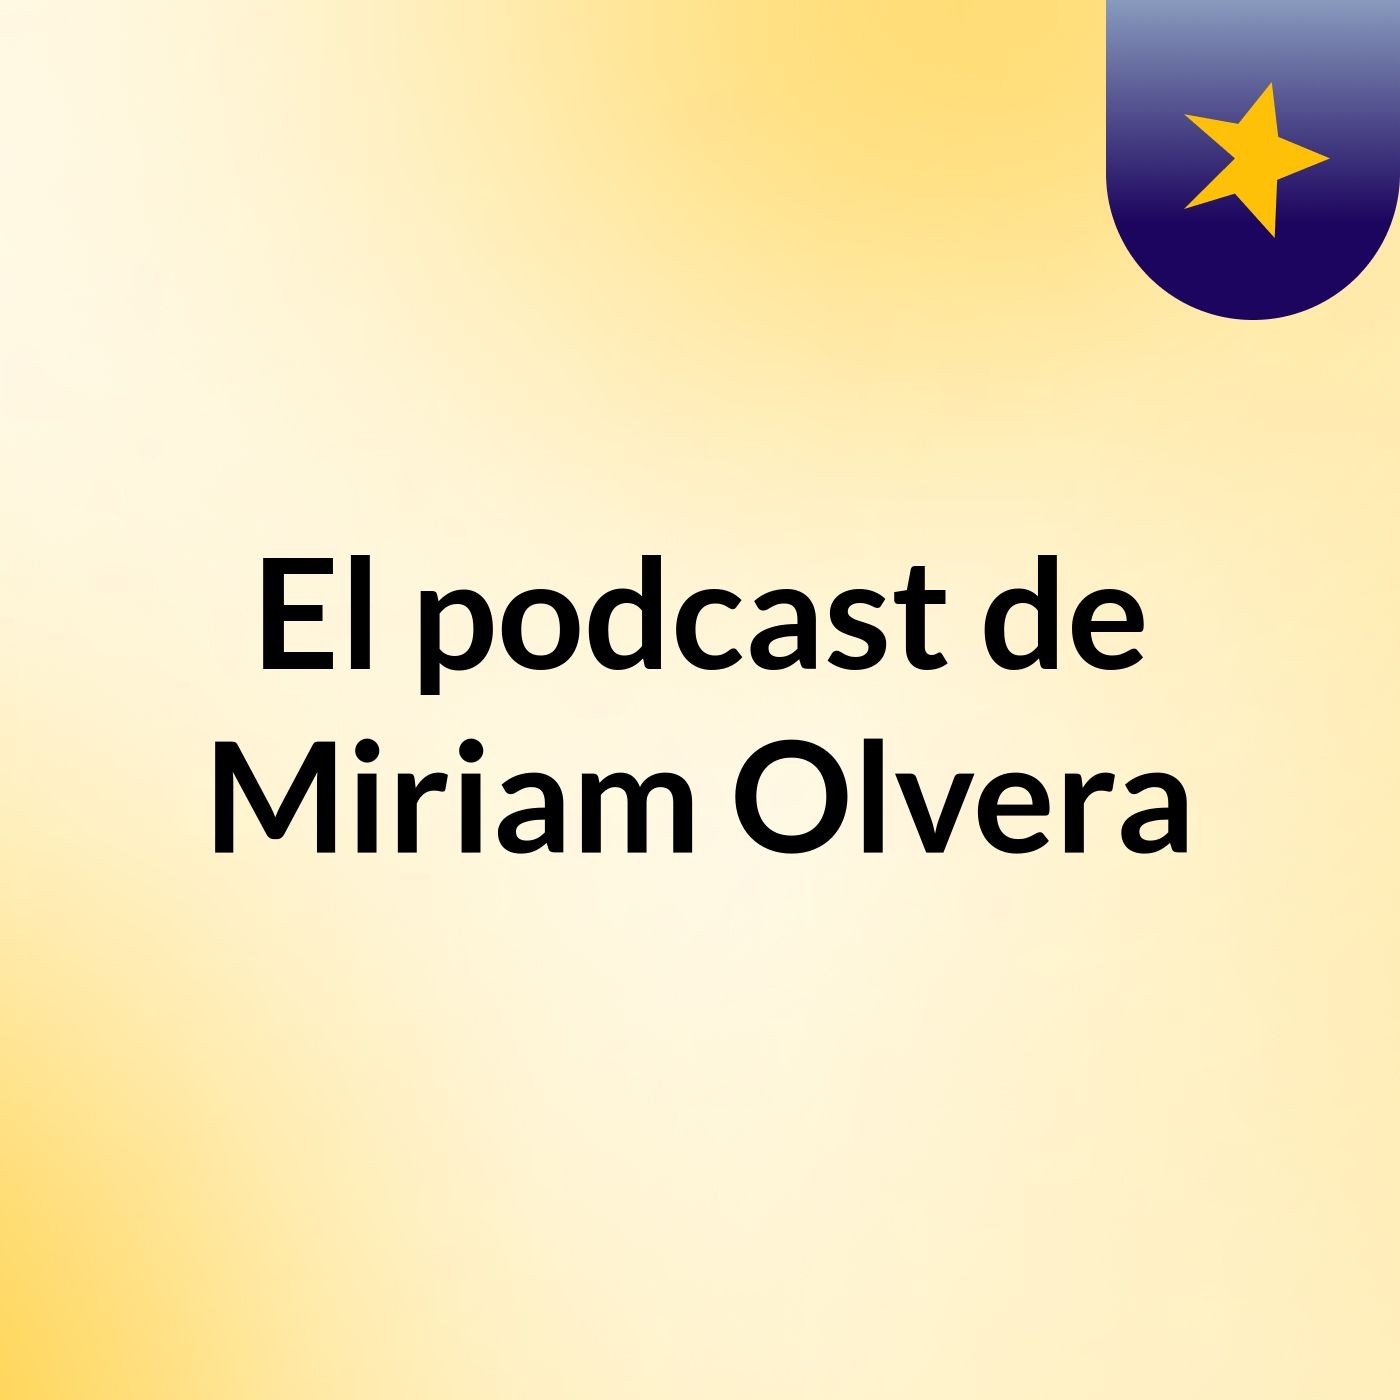 El podcast de Miriam Olvera